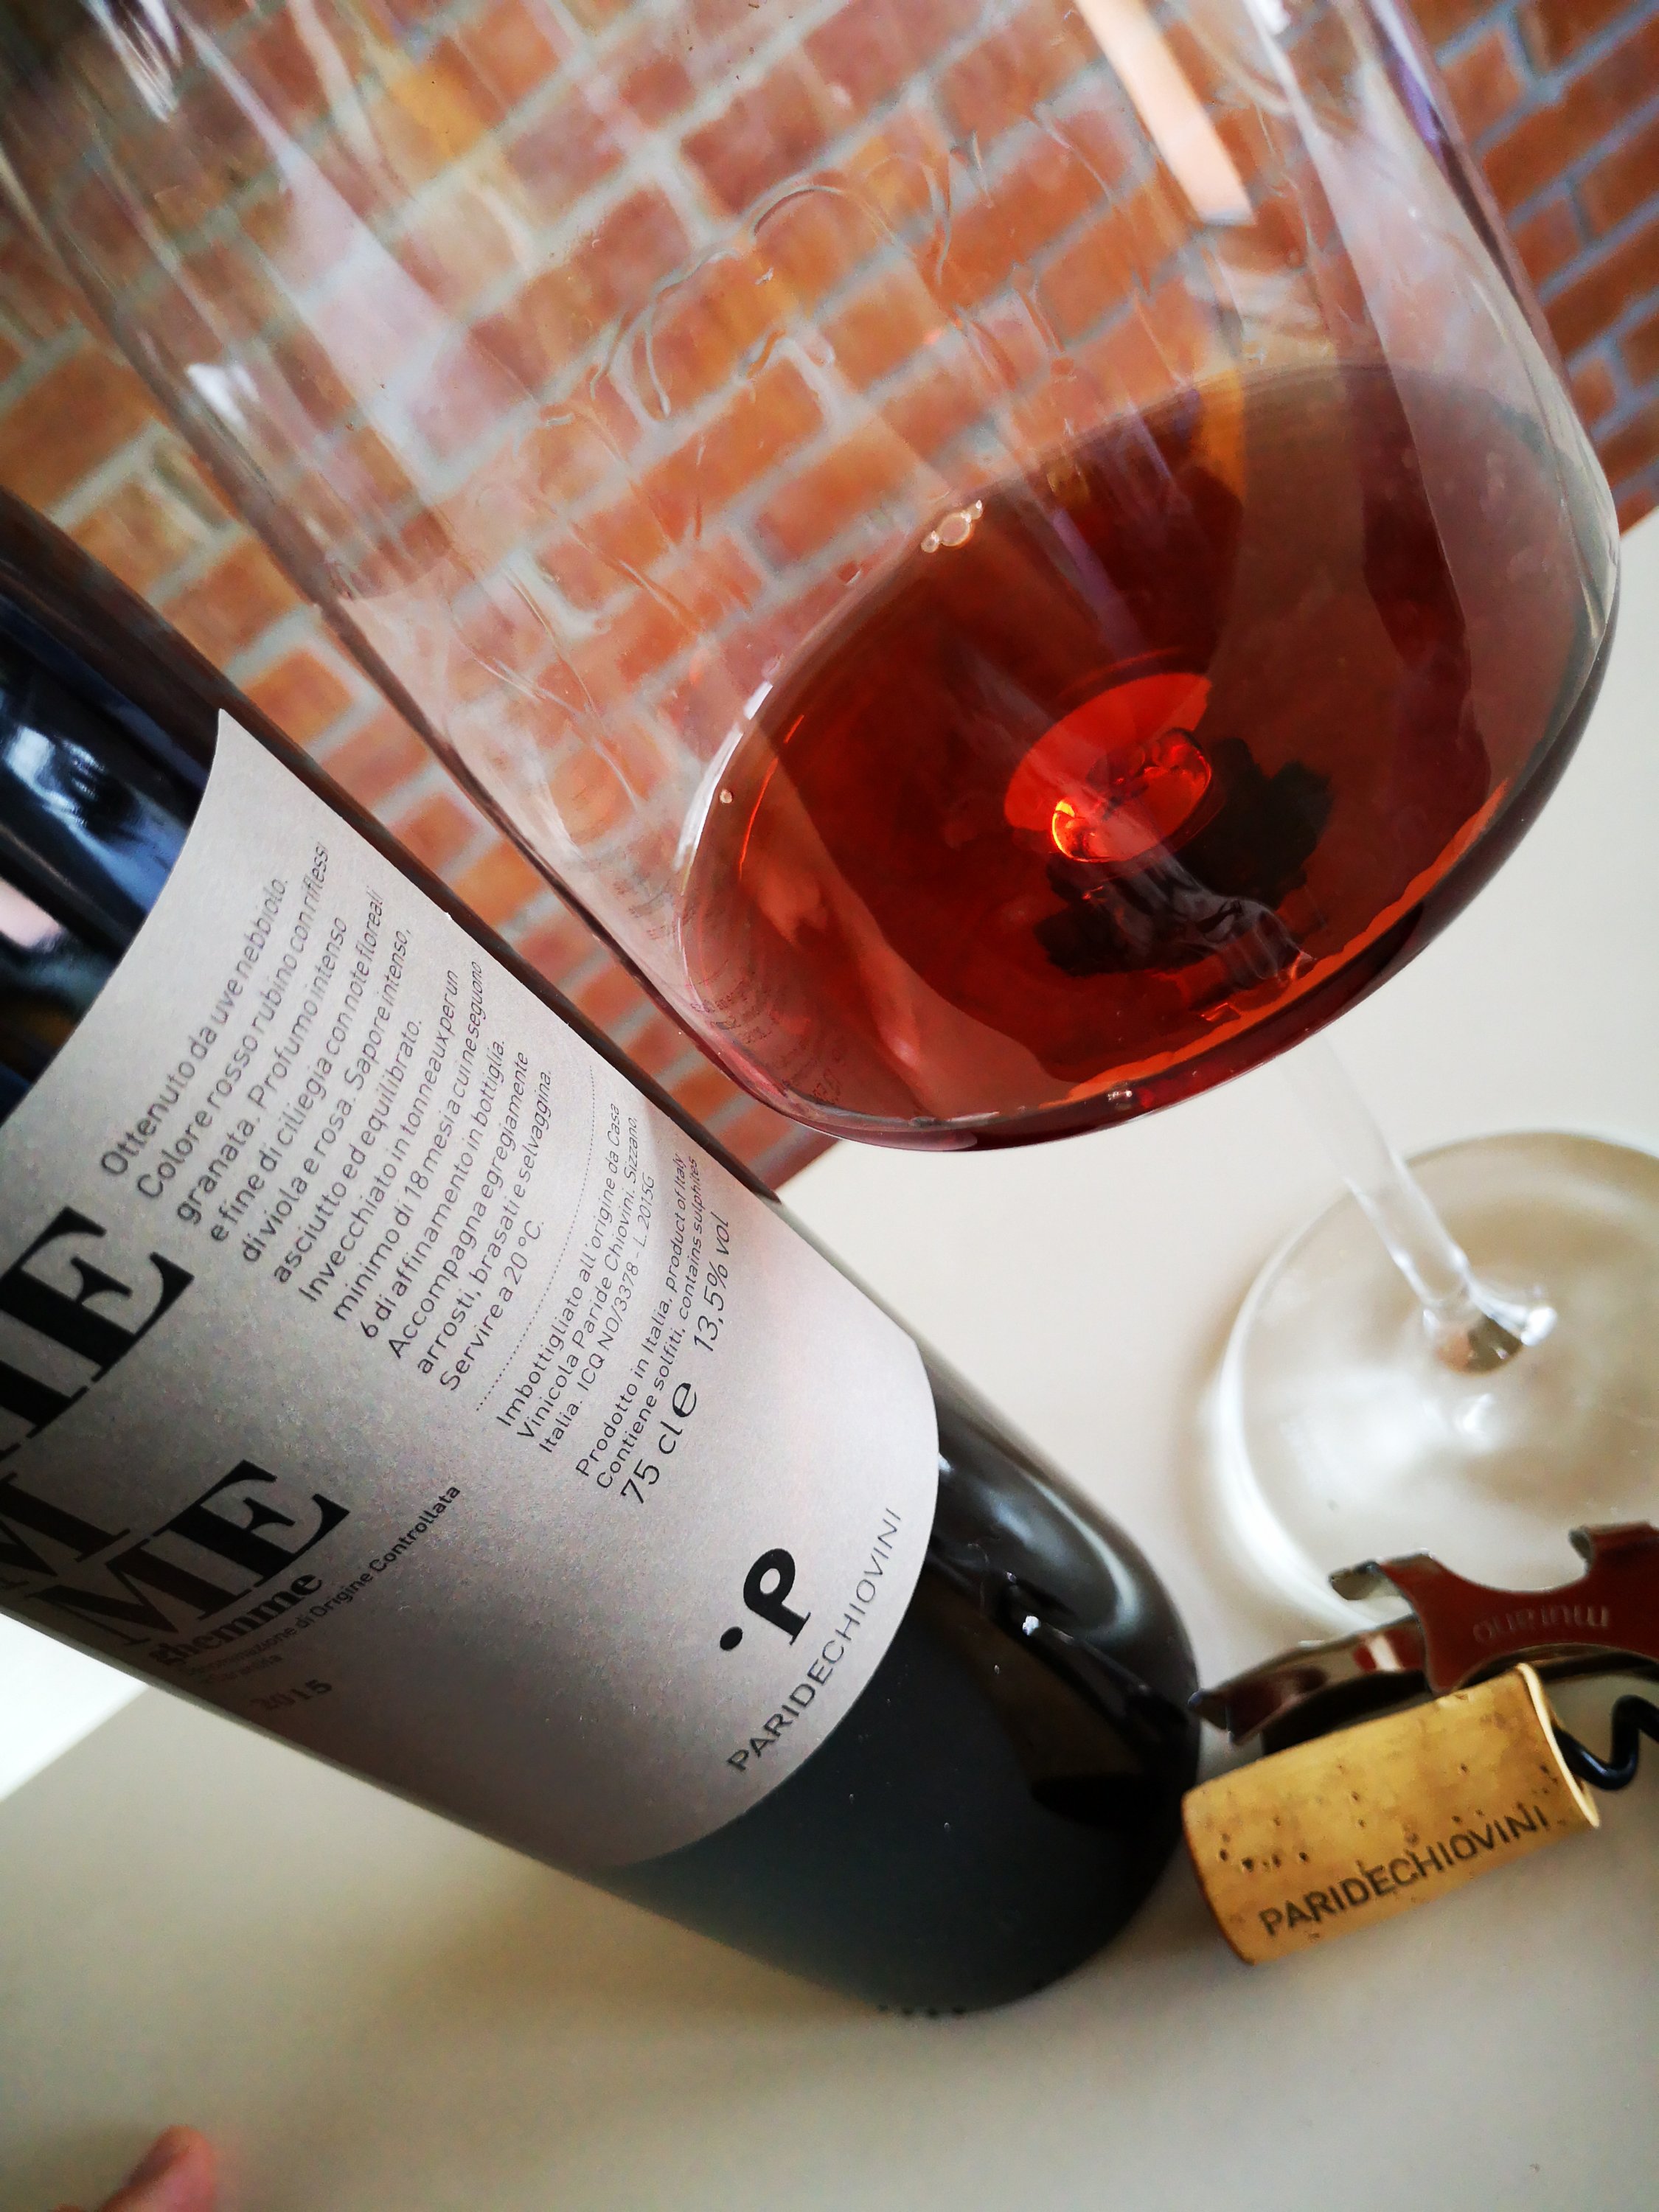 Enonauta/Degustazione di Vino #081 - review - Ghemme 2015 - Paride Chiovini | Alto Piemonte profumato e rigoroso